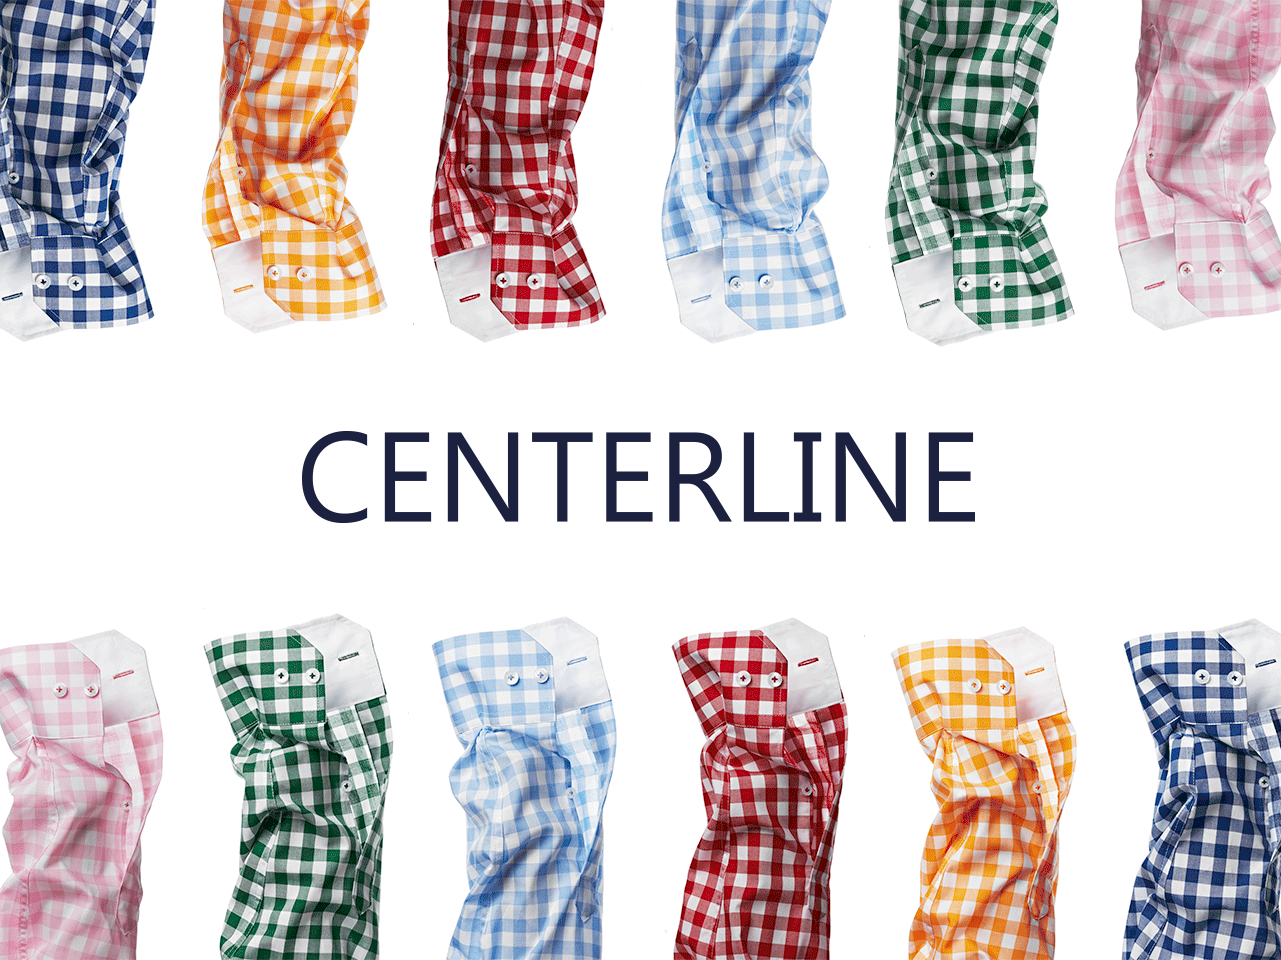 Centerline